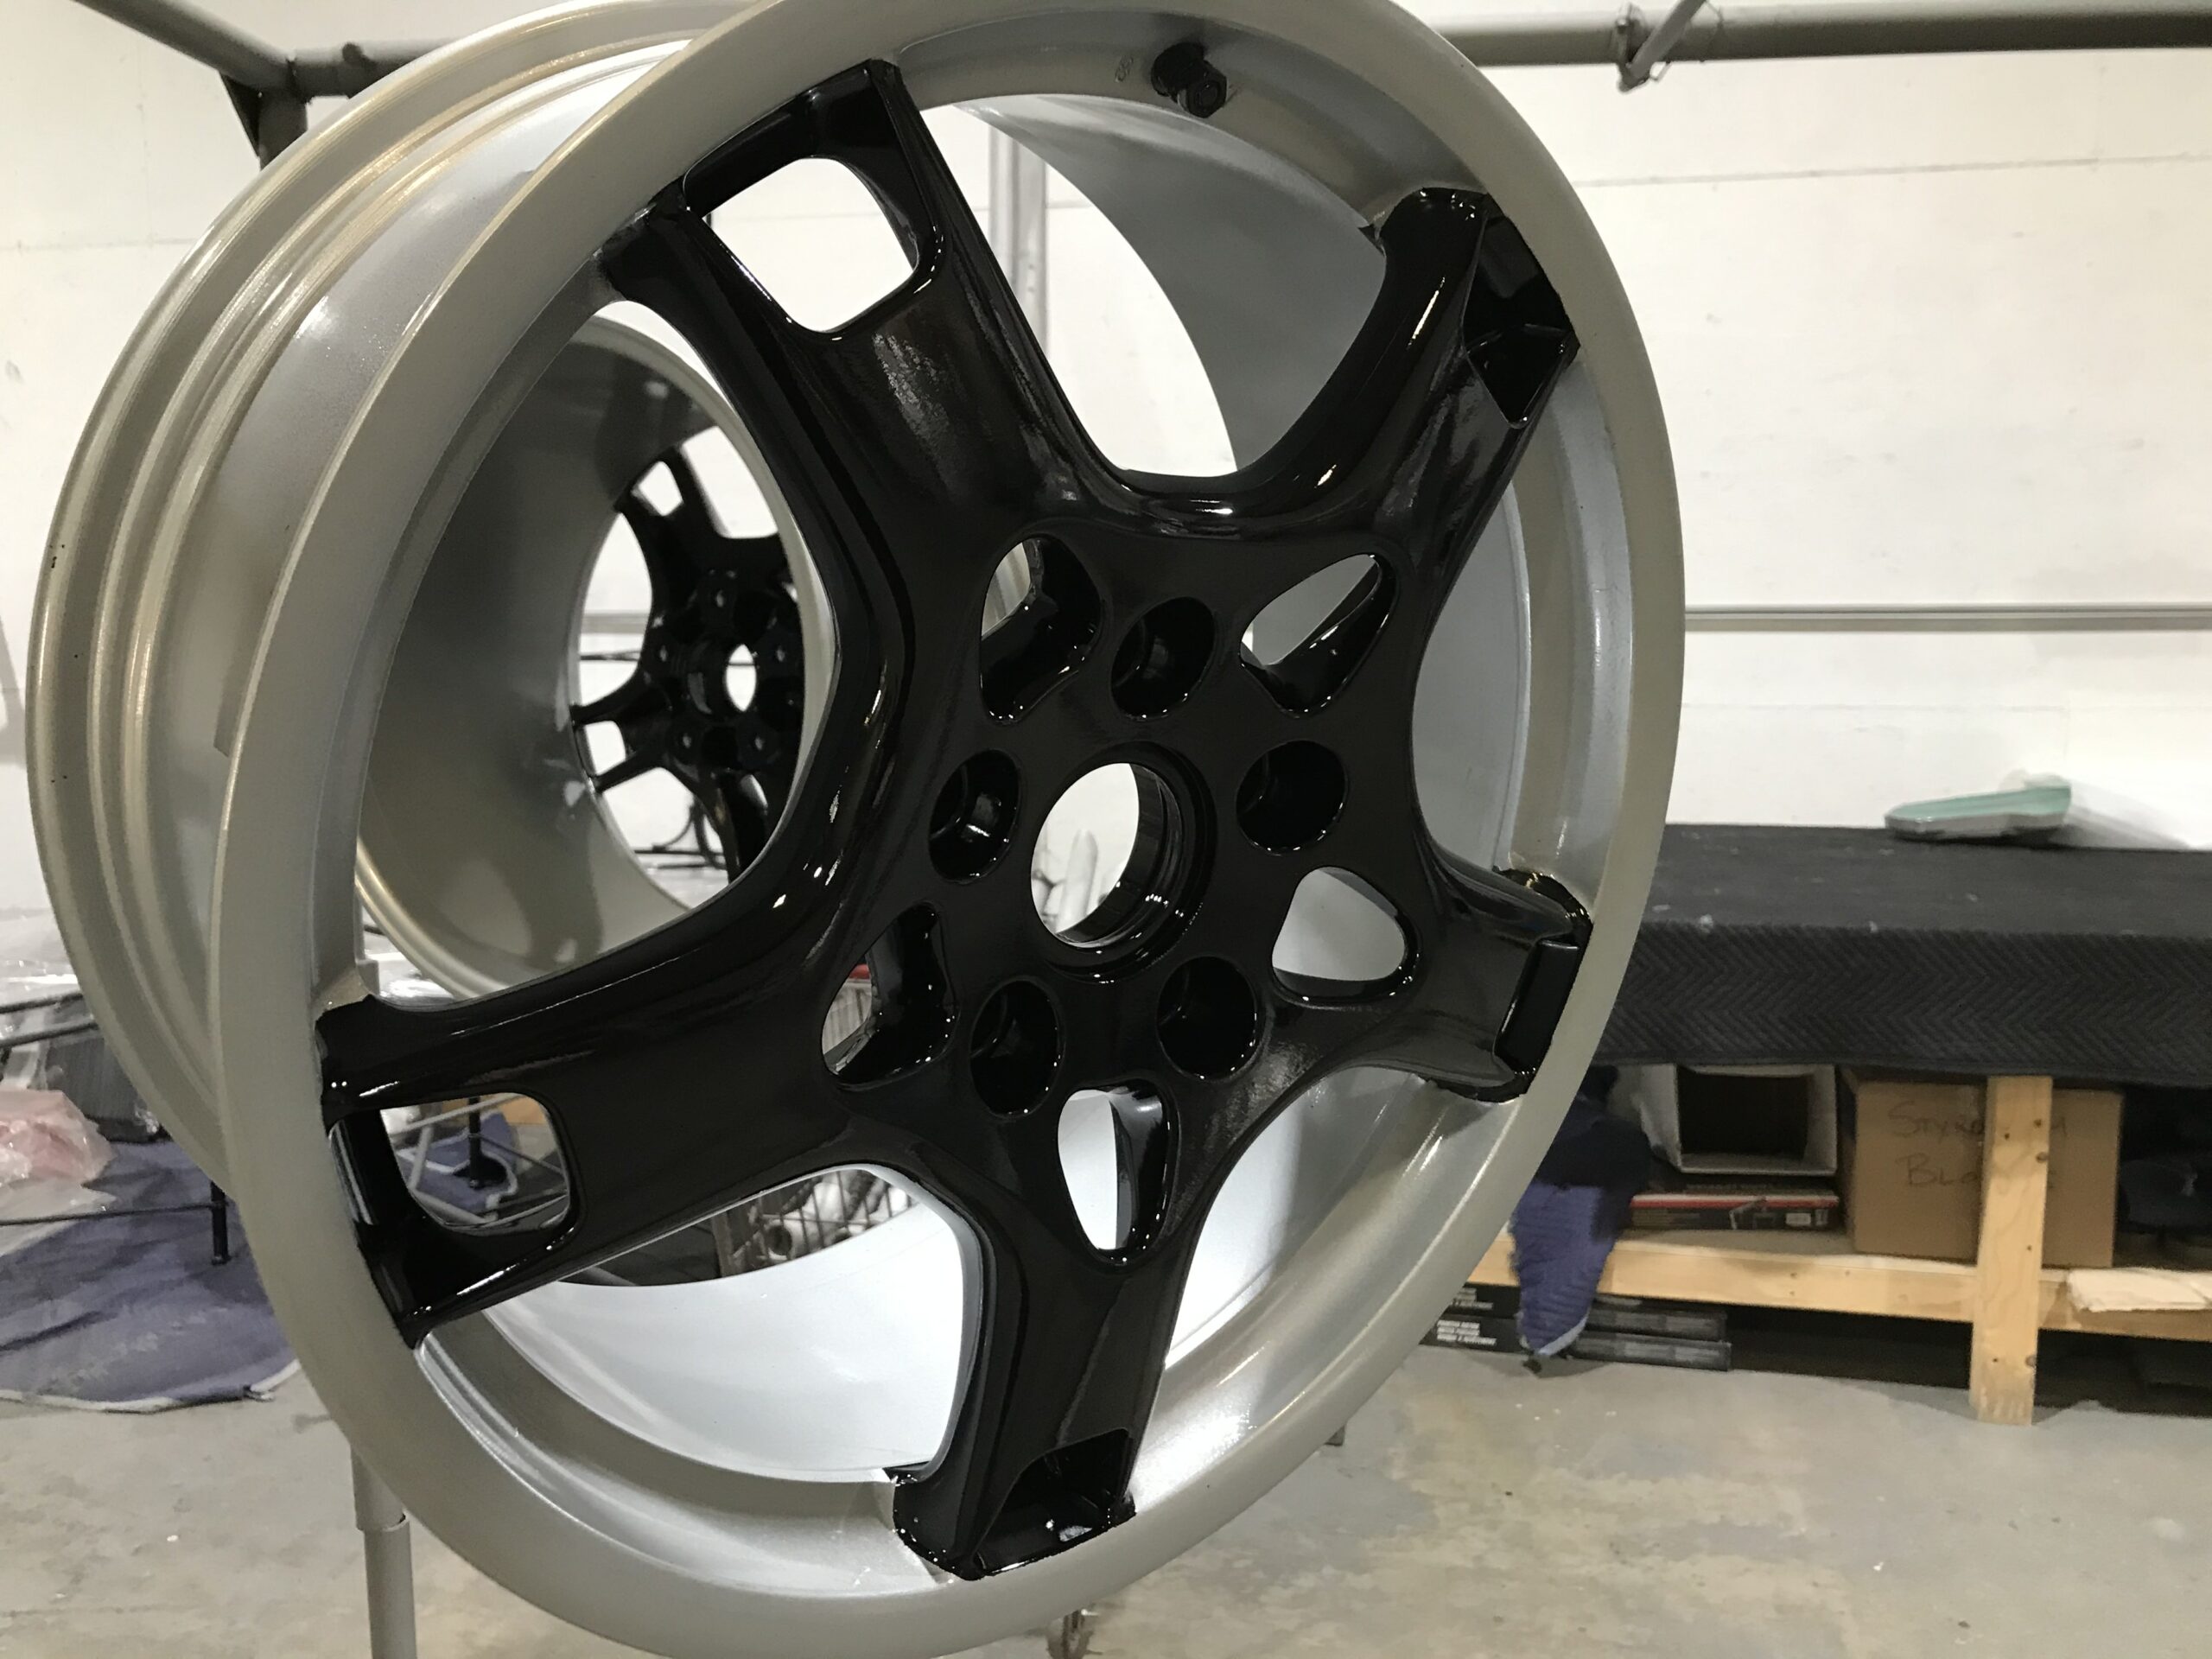 Customized Wheels Powder coating rims